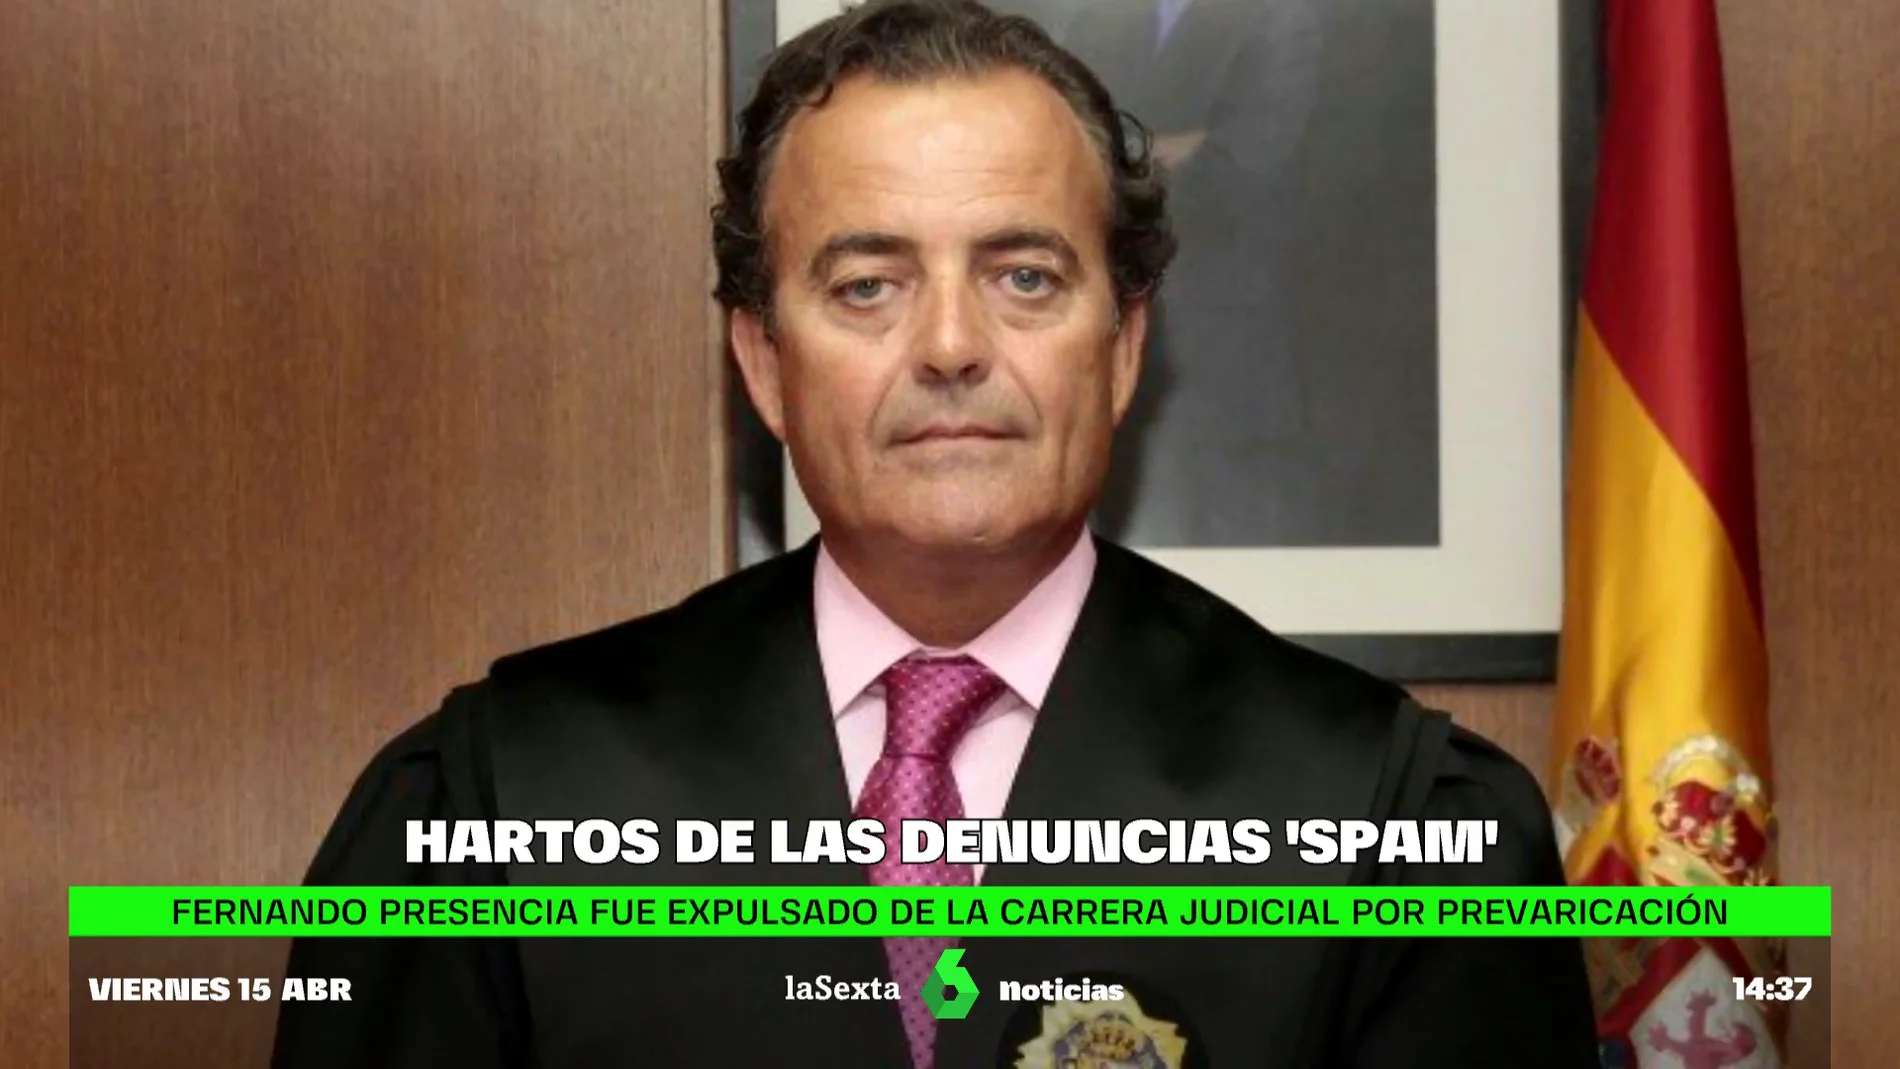 La Justicia investiga al juez 'spam' Presencia, inhabilitado por prevaricación y que ahora denuncia a Zapatero, Delgado...